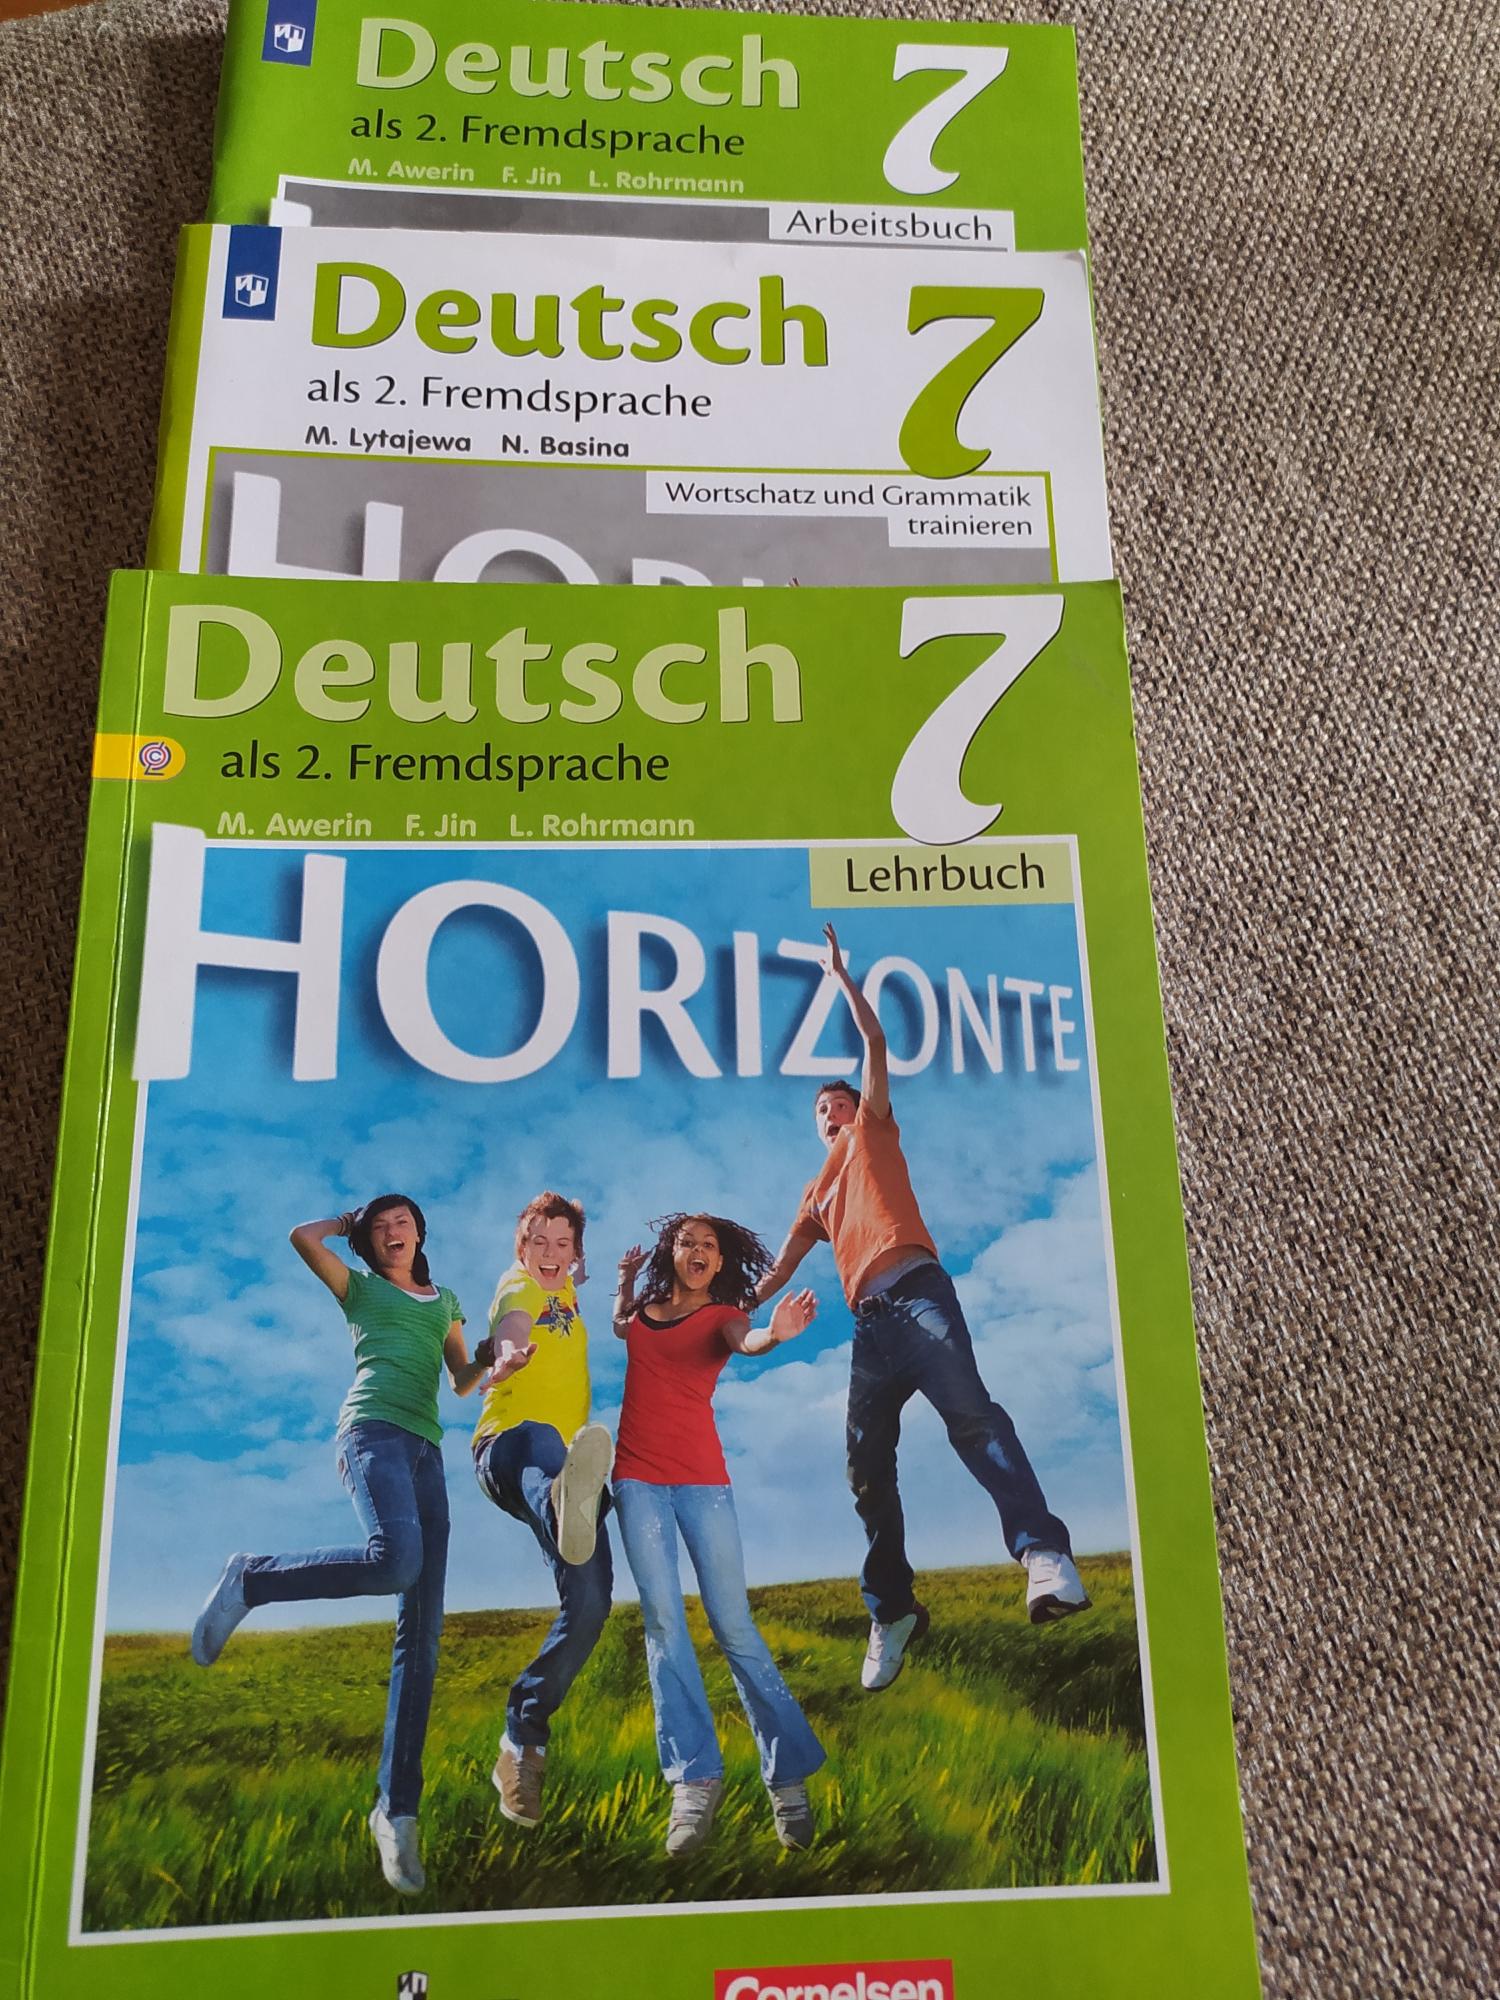 Читать немецкий горизонты 7 класс. Хобби и их названия немецкий Горизонт 5 класс. Горизонт немецкий язык 5 класс учебник 1 урок презентаций.